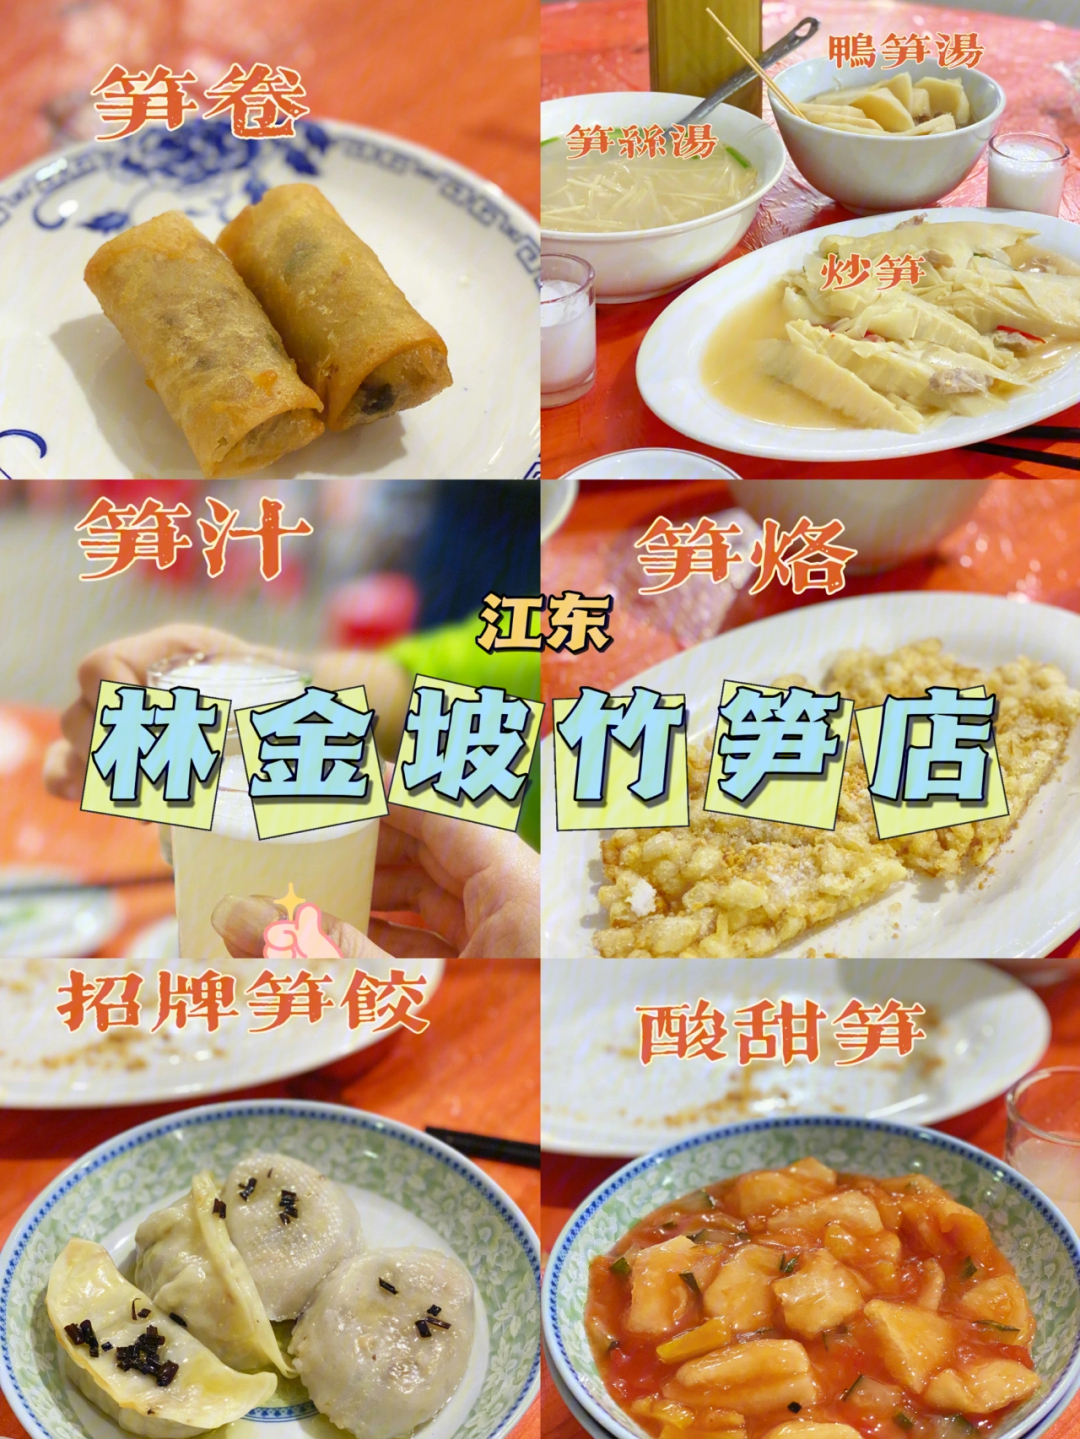 潮汕江东美食林金坡全笋宴9道菜仅需60